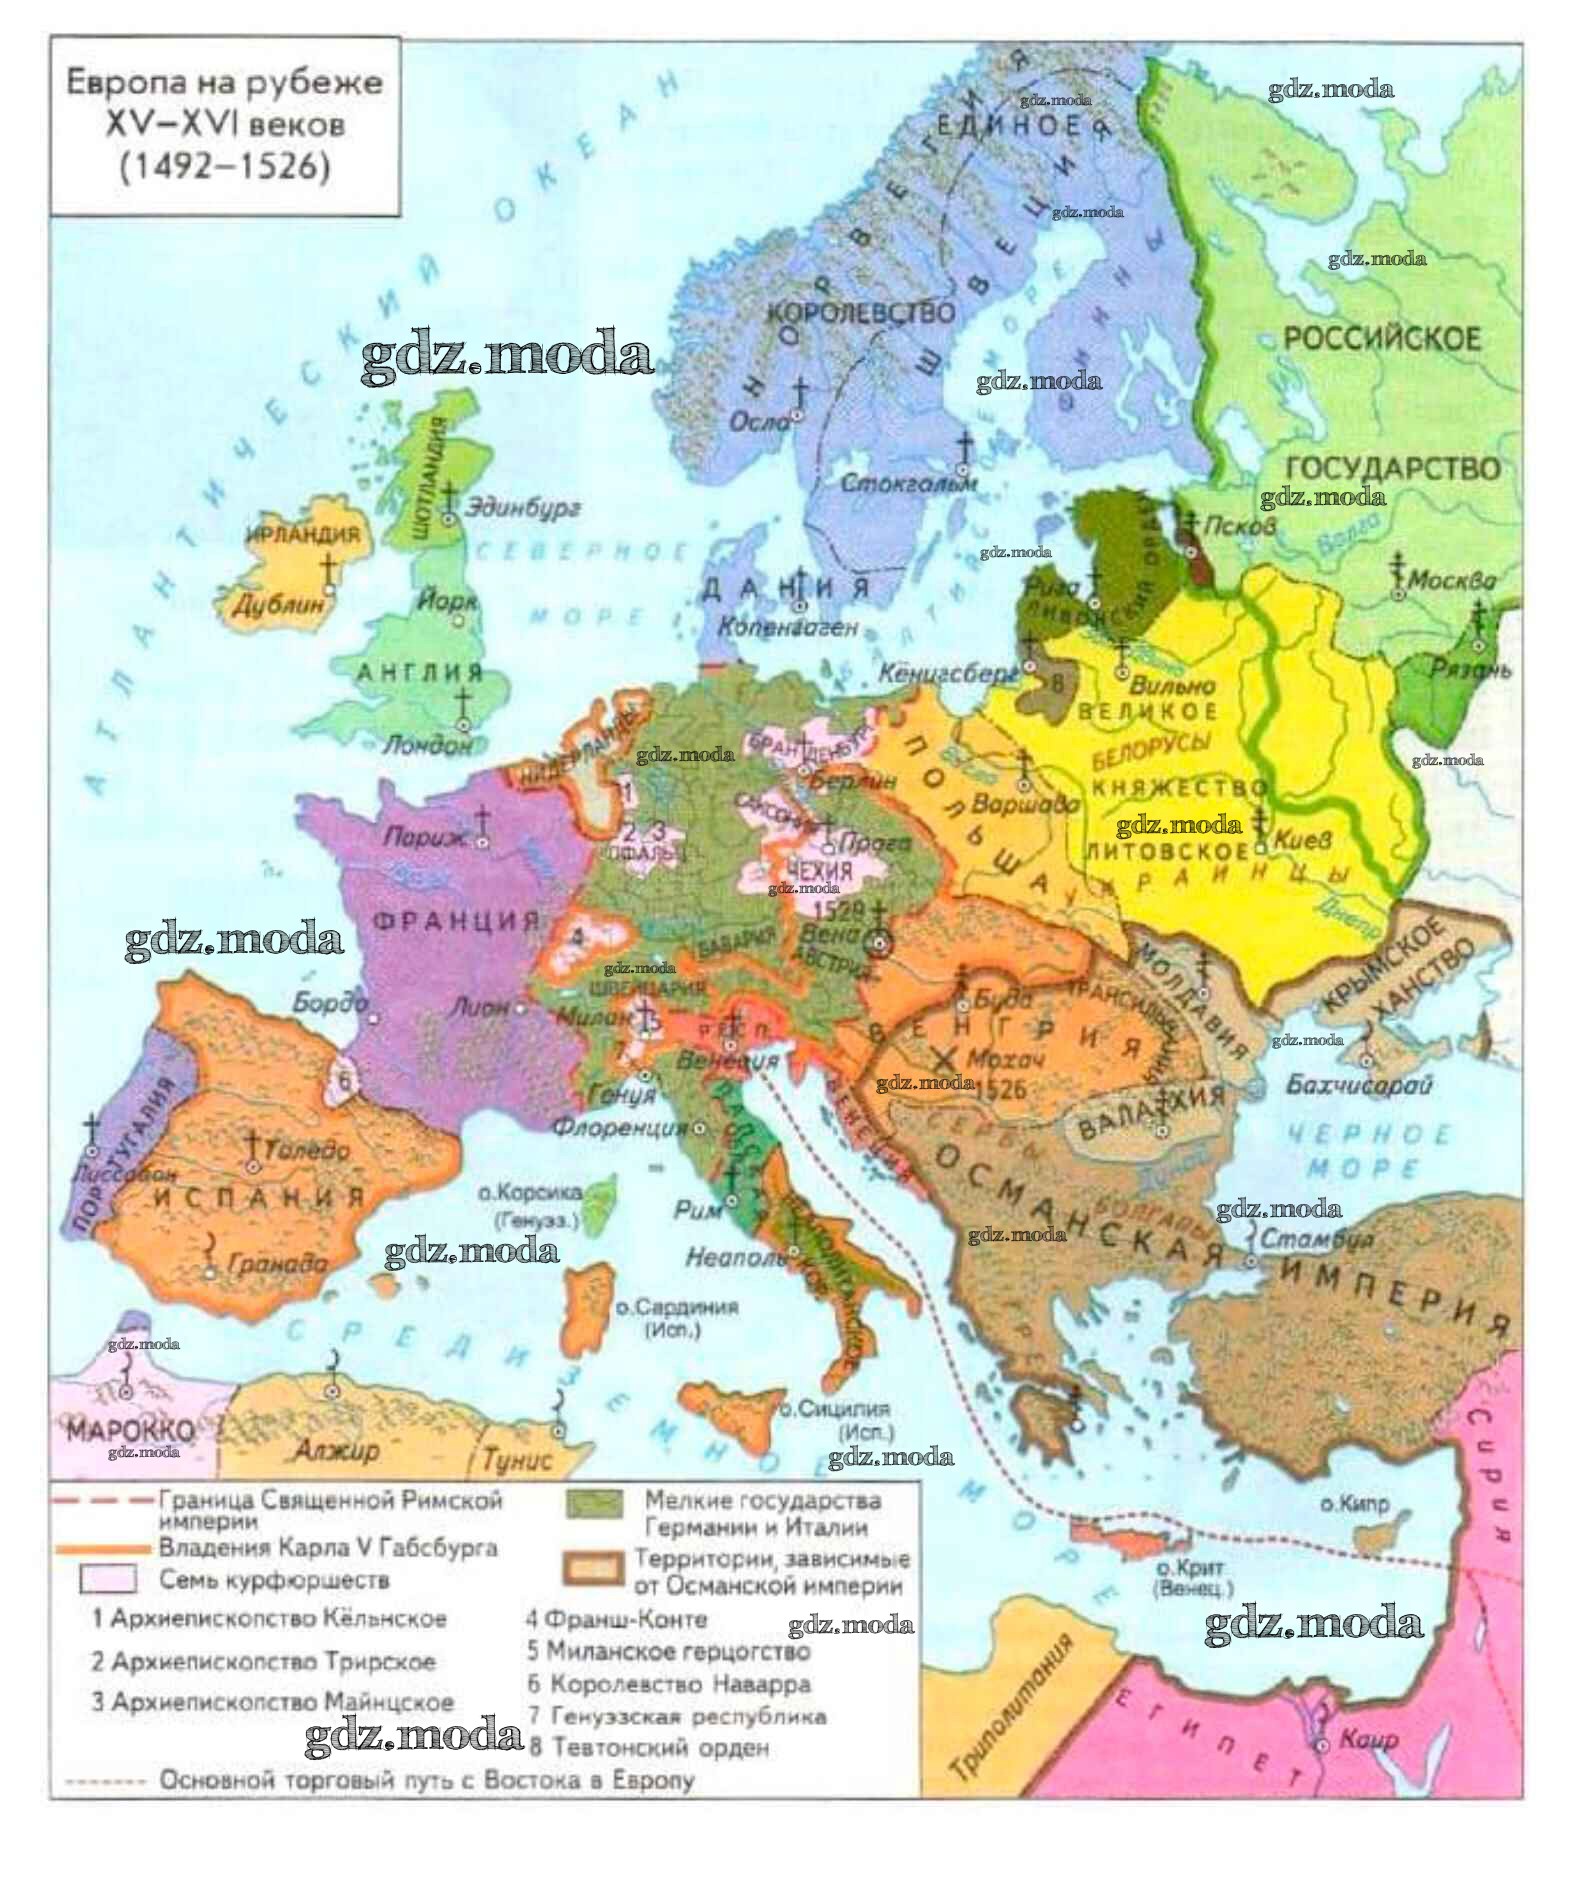 История европы в средневековье. Карта Европы 15 века. Карат Еврпоы конец 15 века. Карта Европы в начале 15 века. Карта Европы в 15 веке государства.